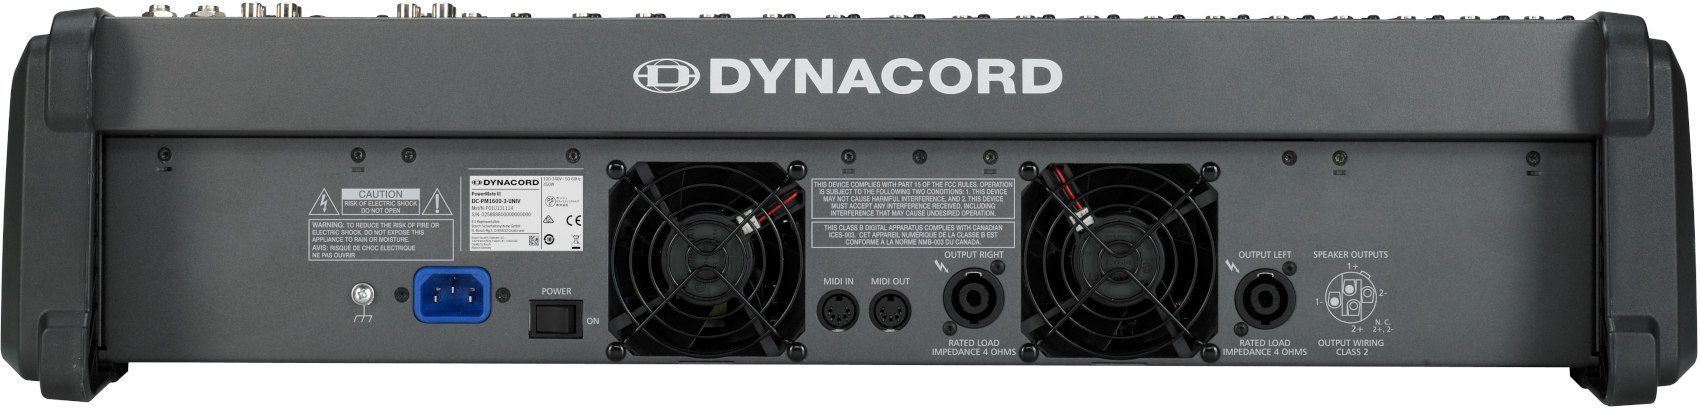 Dynacord POWERMATE 1600-3 - фото 6